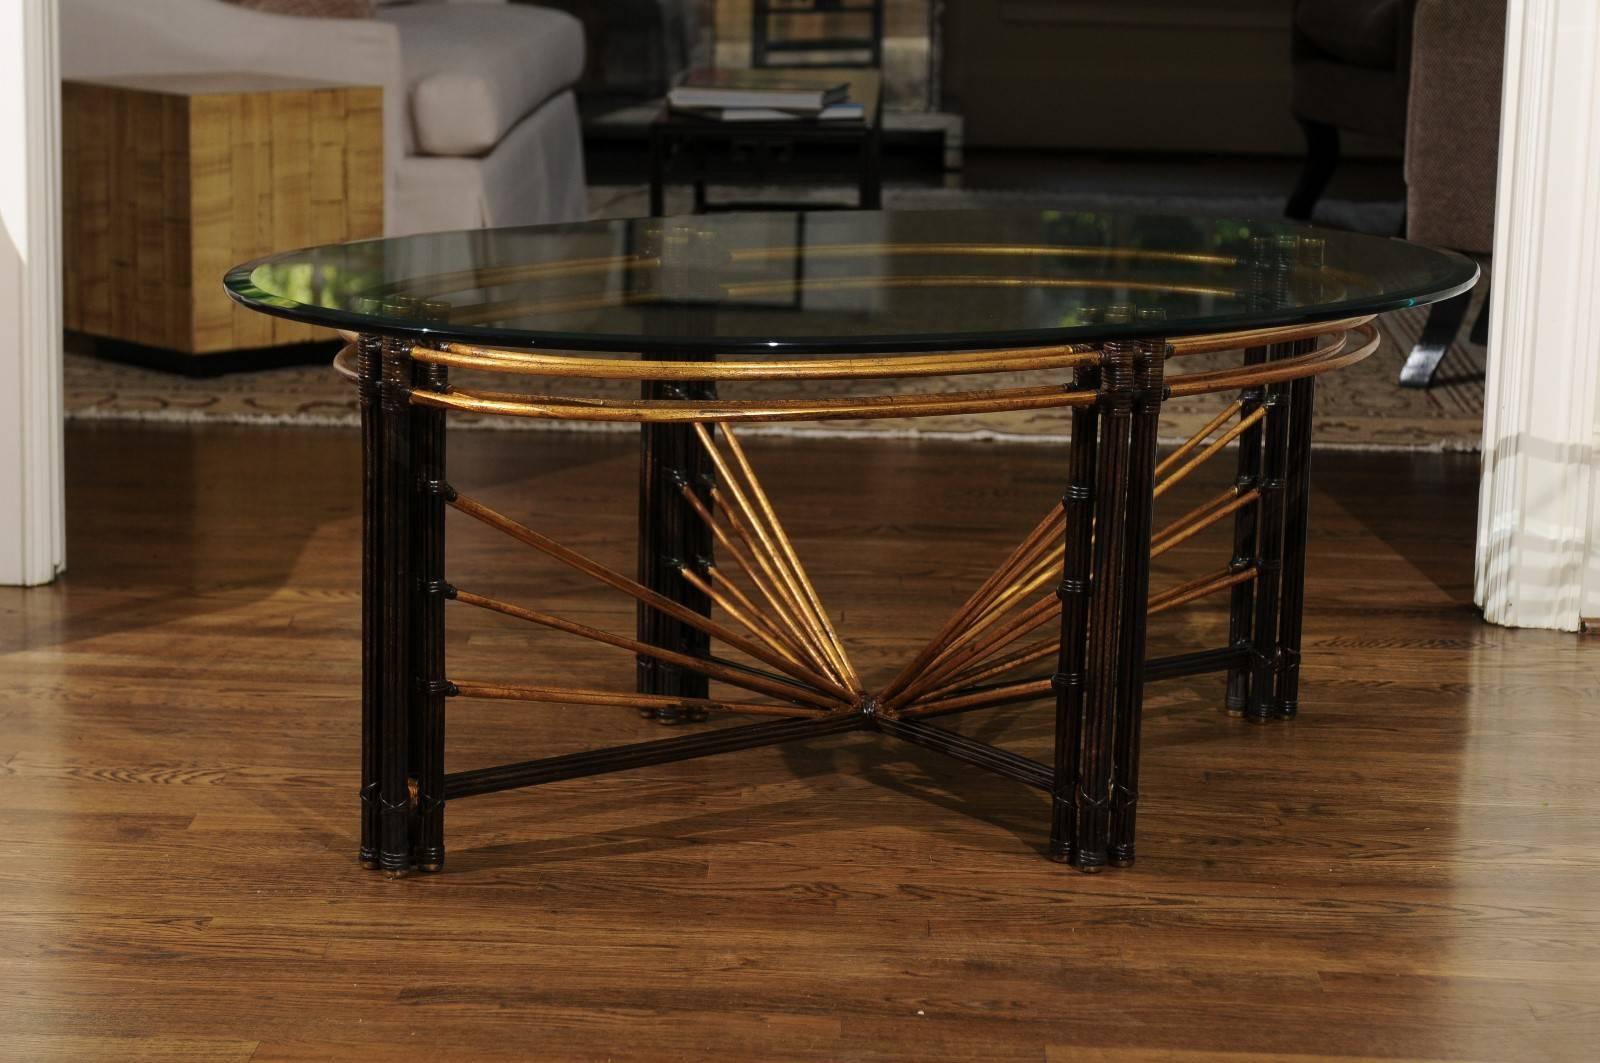 Une table basse d'une beauté étonnante, datant de 1970. Construction en acier lourd, conçue et peinte pour ressembler à du bambou. De superbes reflets dorés avec des accents en laiton massif. Plateau en verre épais à bord biseauté. Une qualité et un